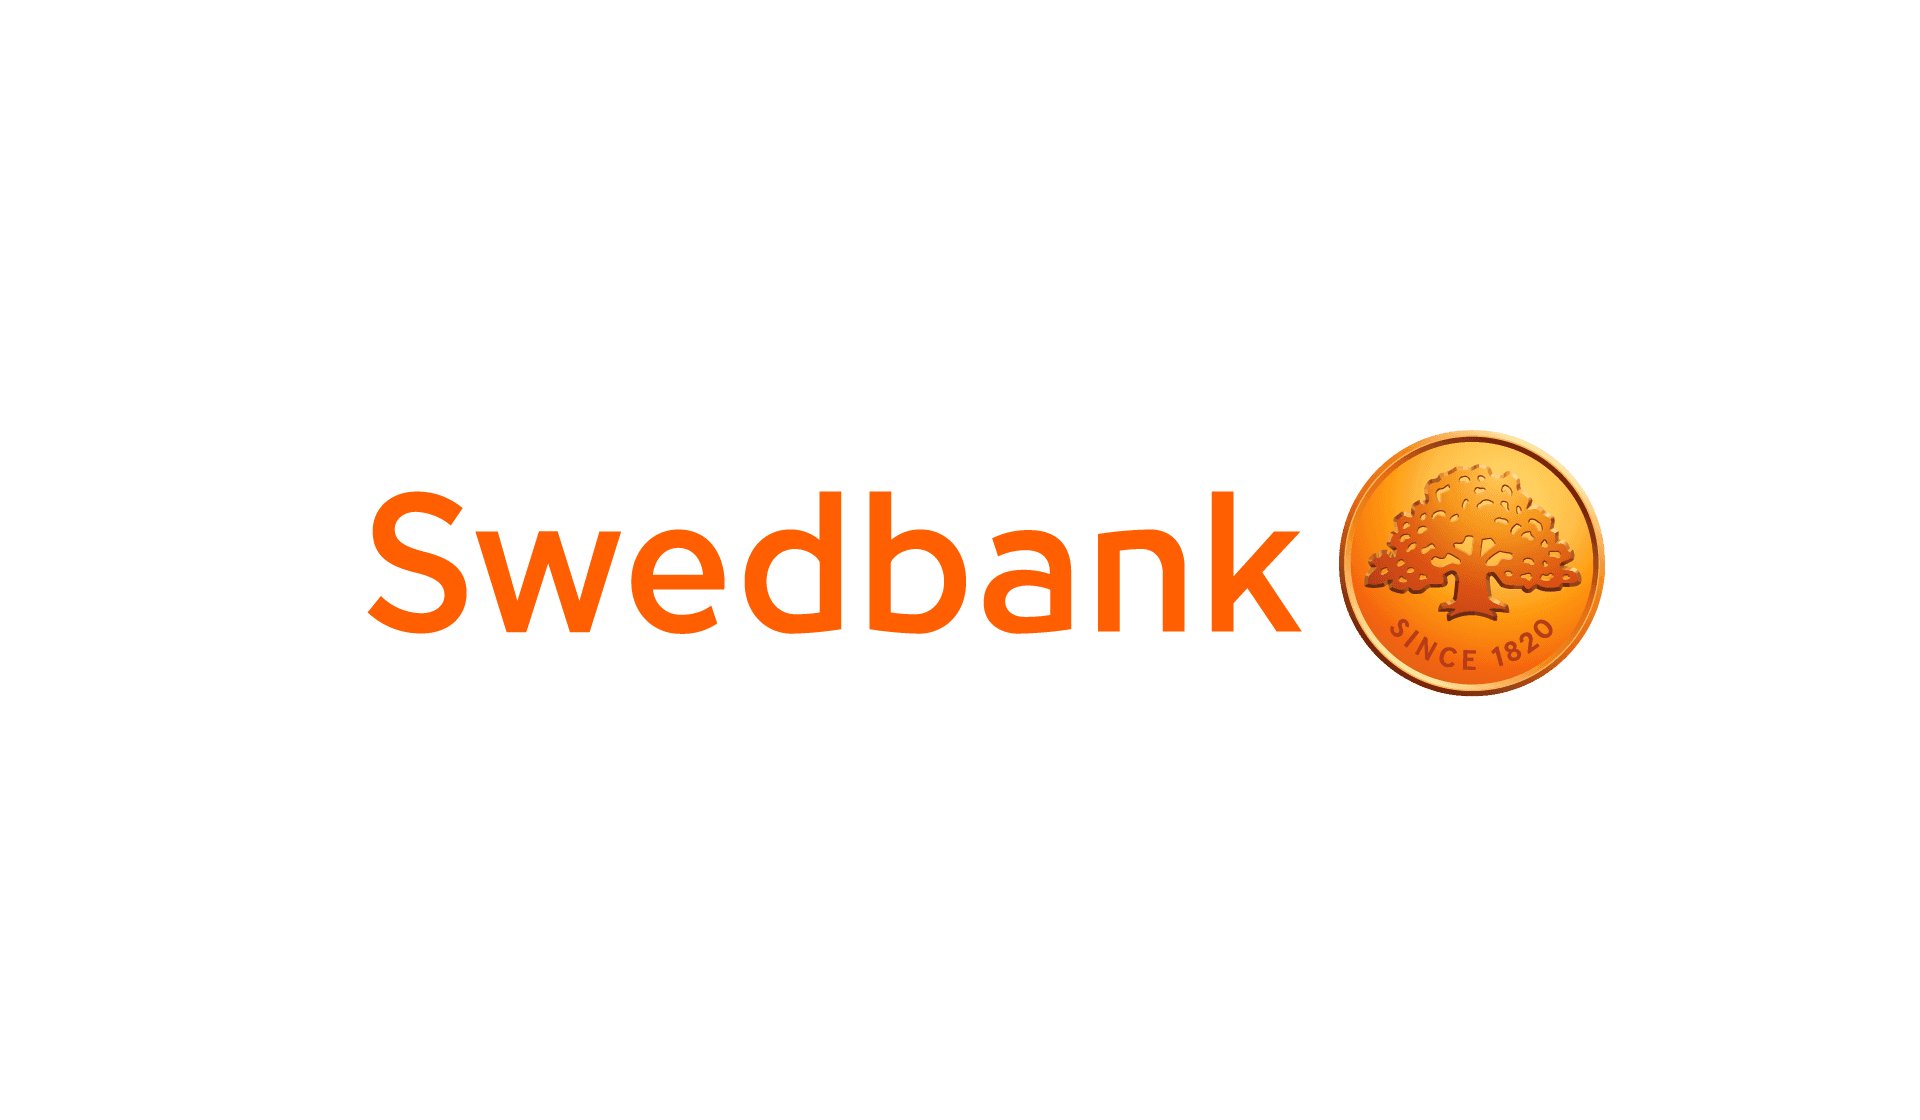 Swedbank banner transparent background.png